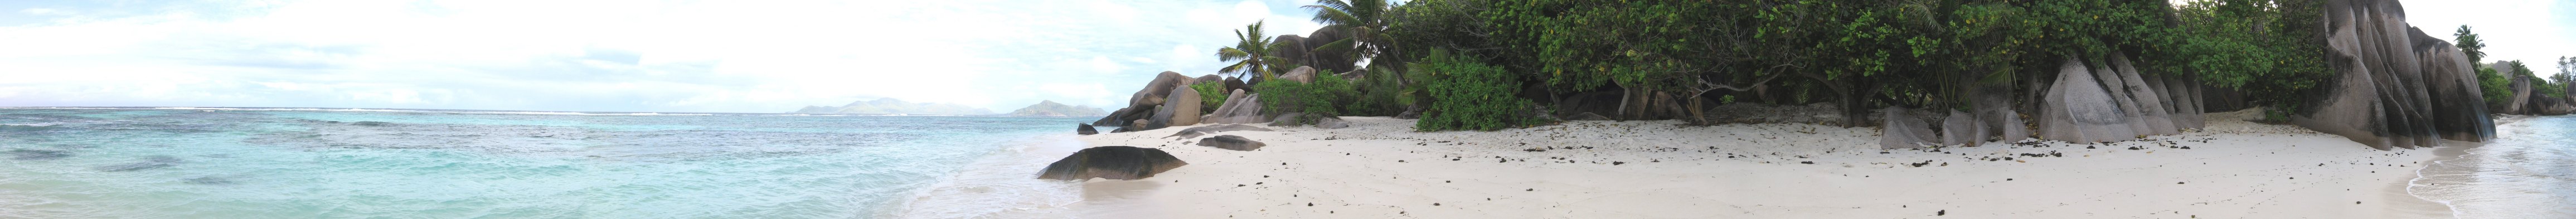 Panorama : Visite virtuelle de la plage d'Anse Source d'Argent - La Digue, Seychelles.